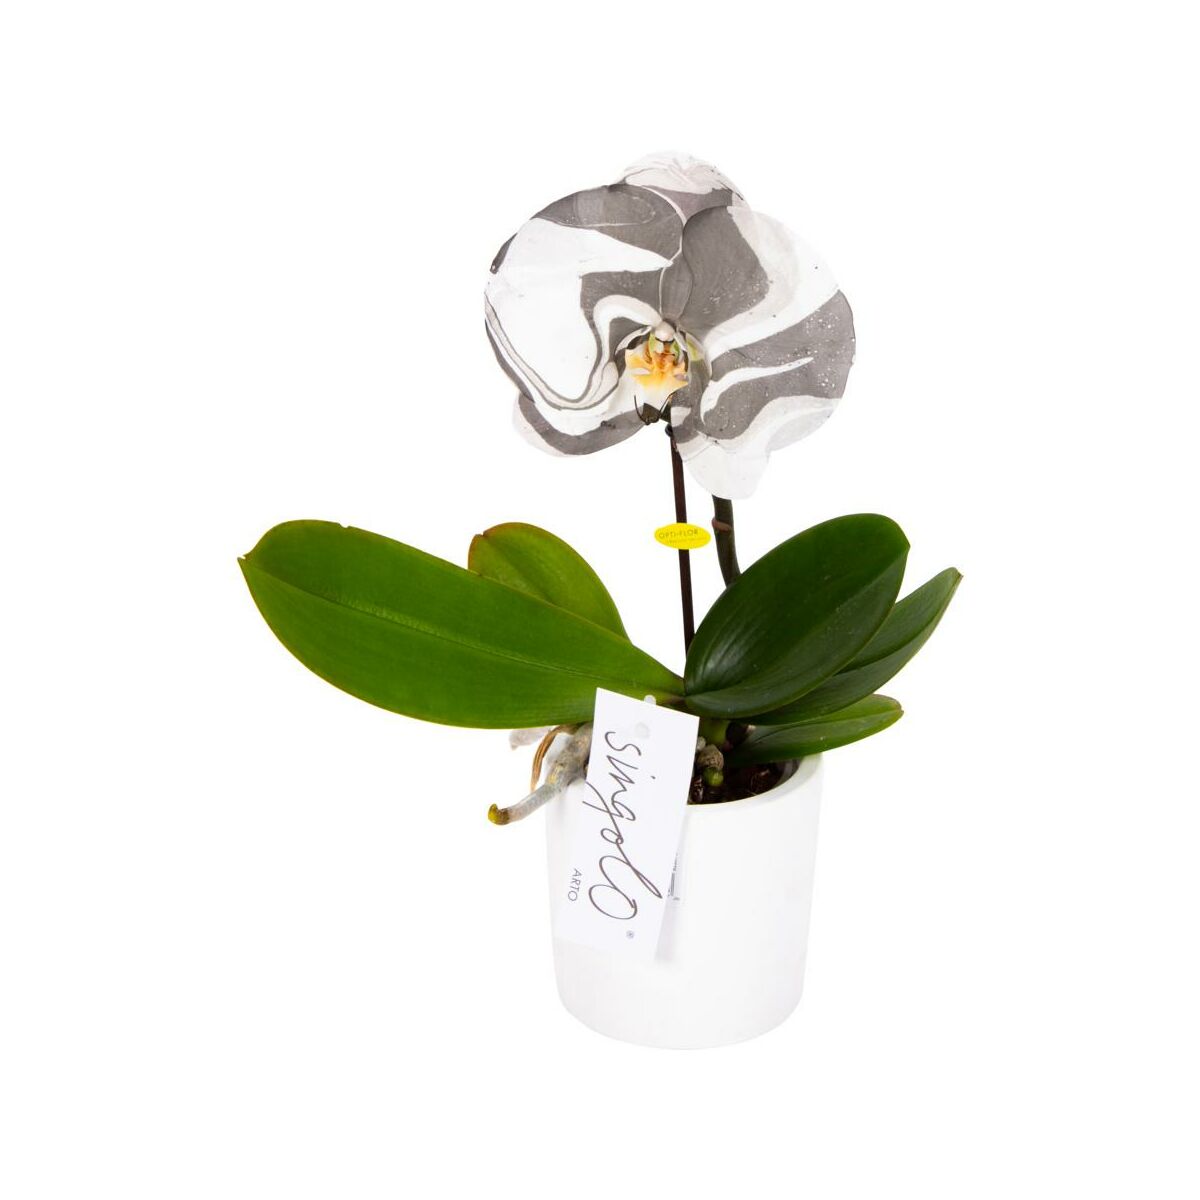 Синголо орхидея фото